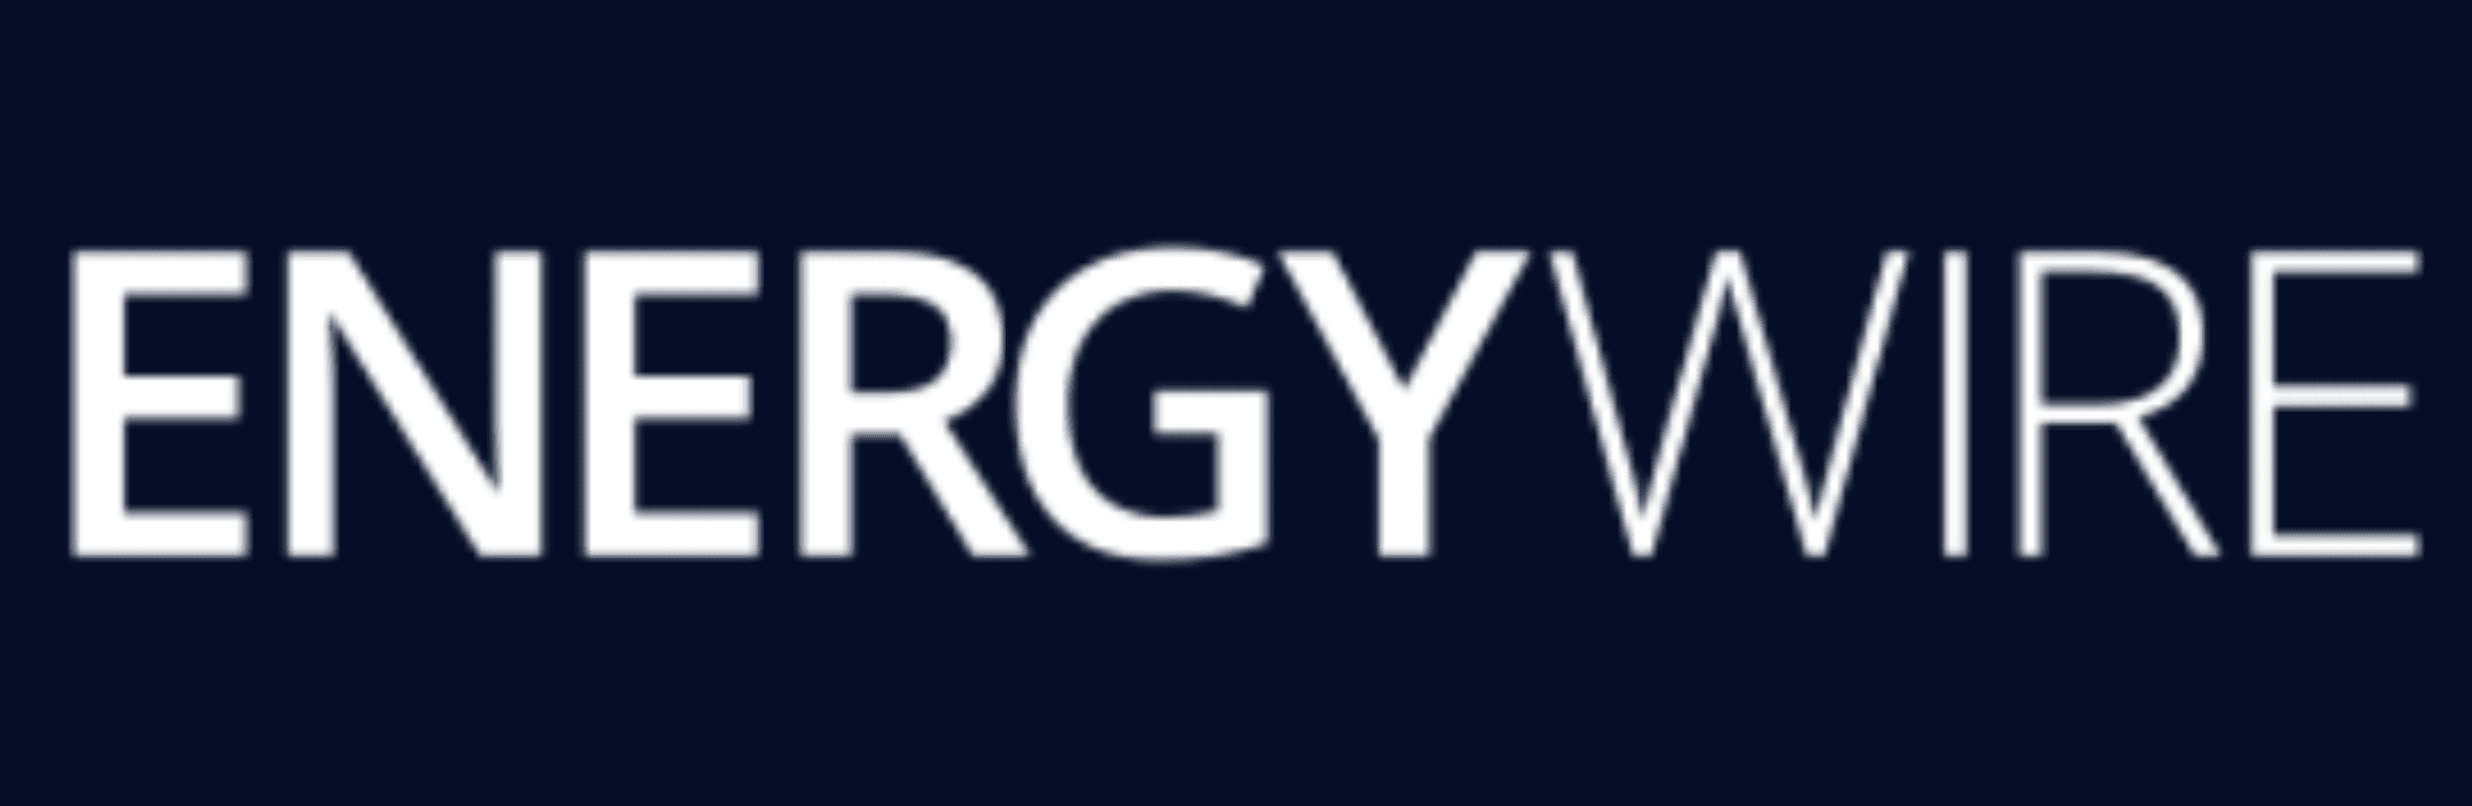 Energy Wire logo